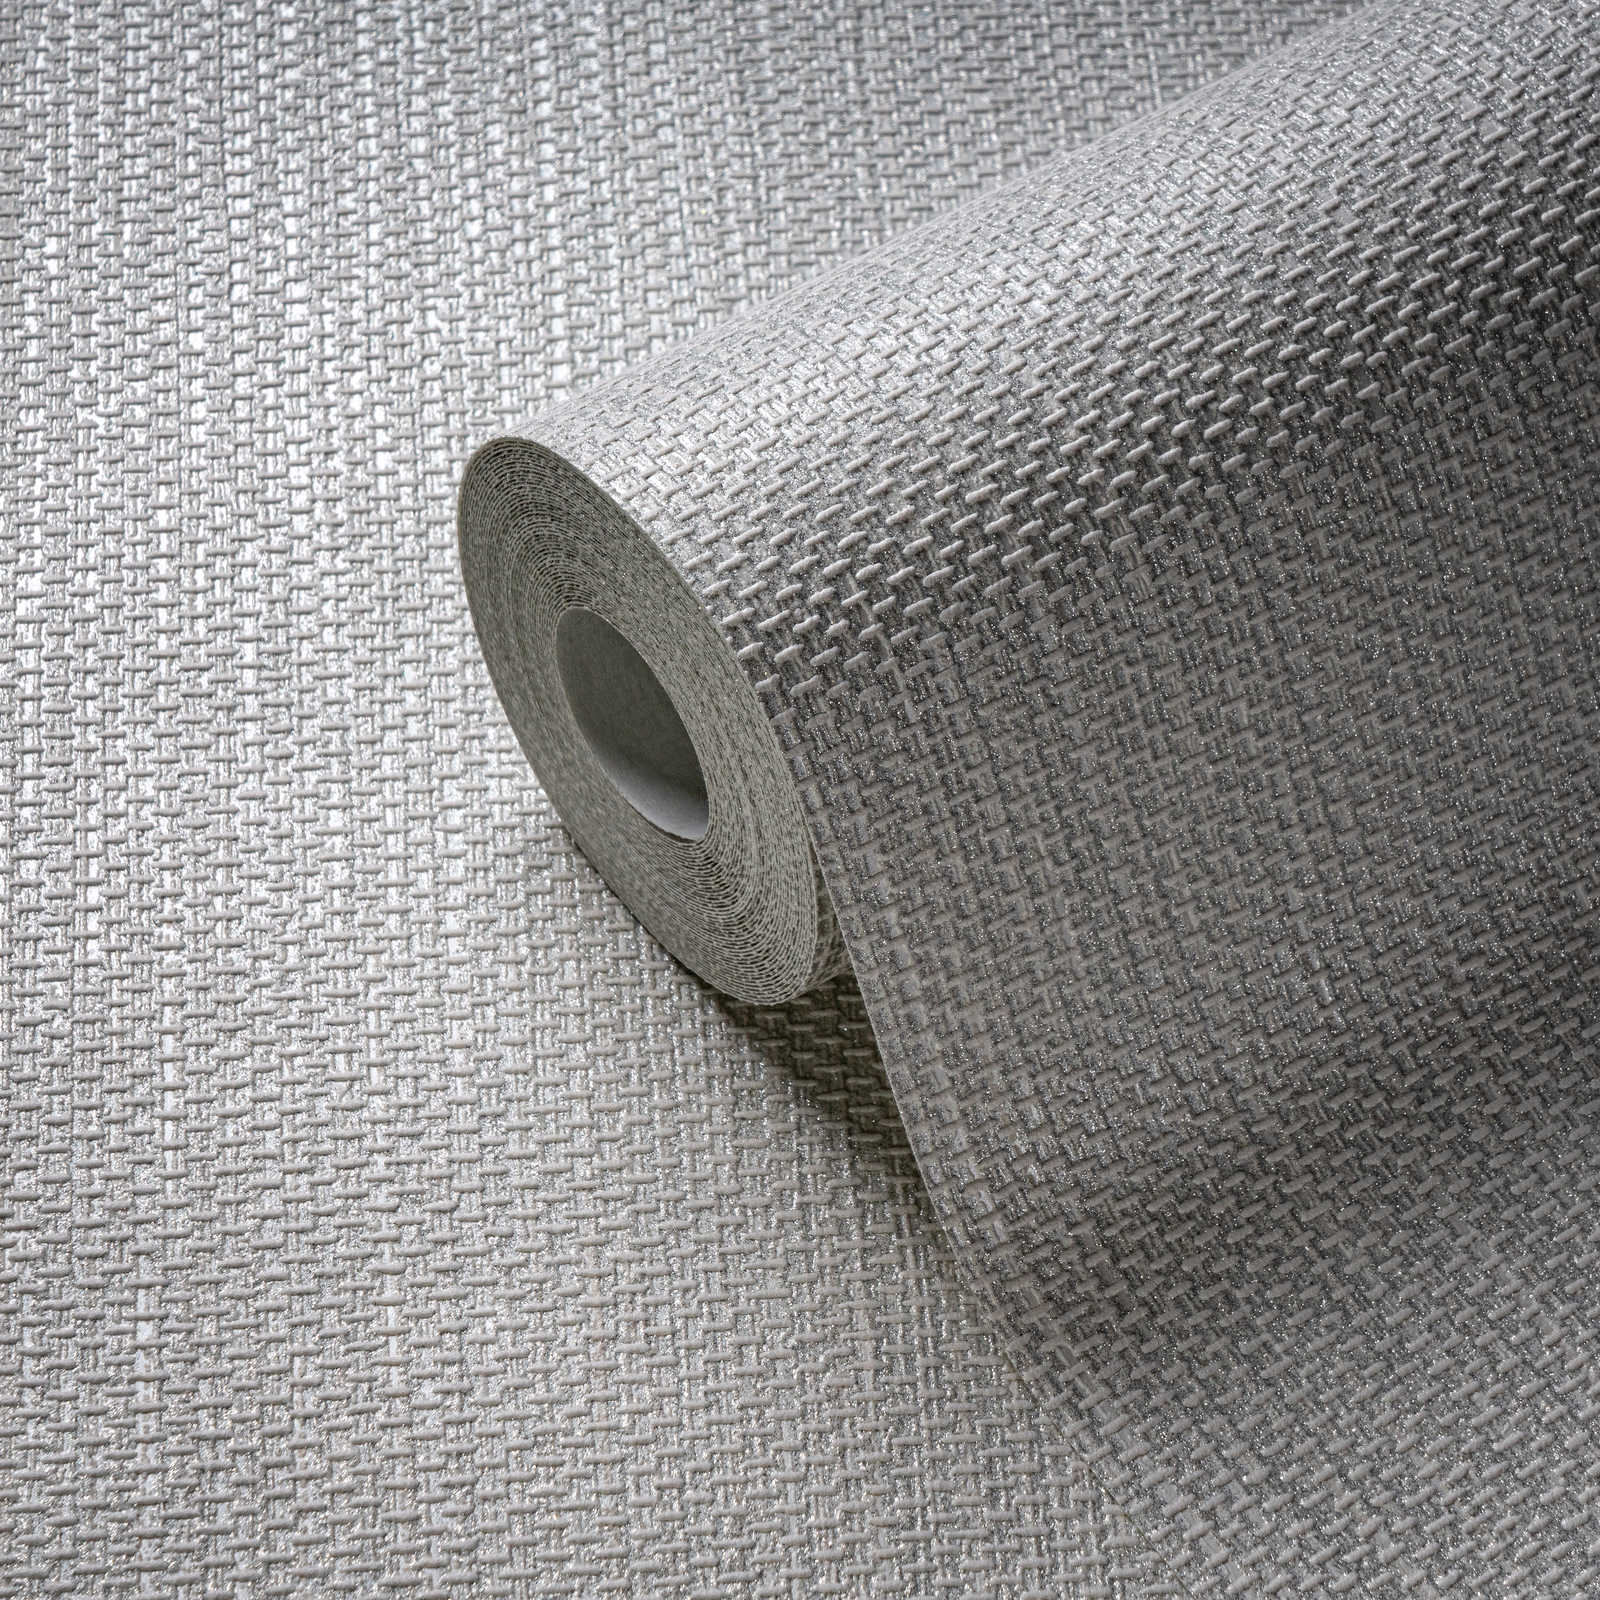             Behang met textuur en metaaleffect - grijs
        